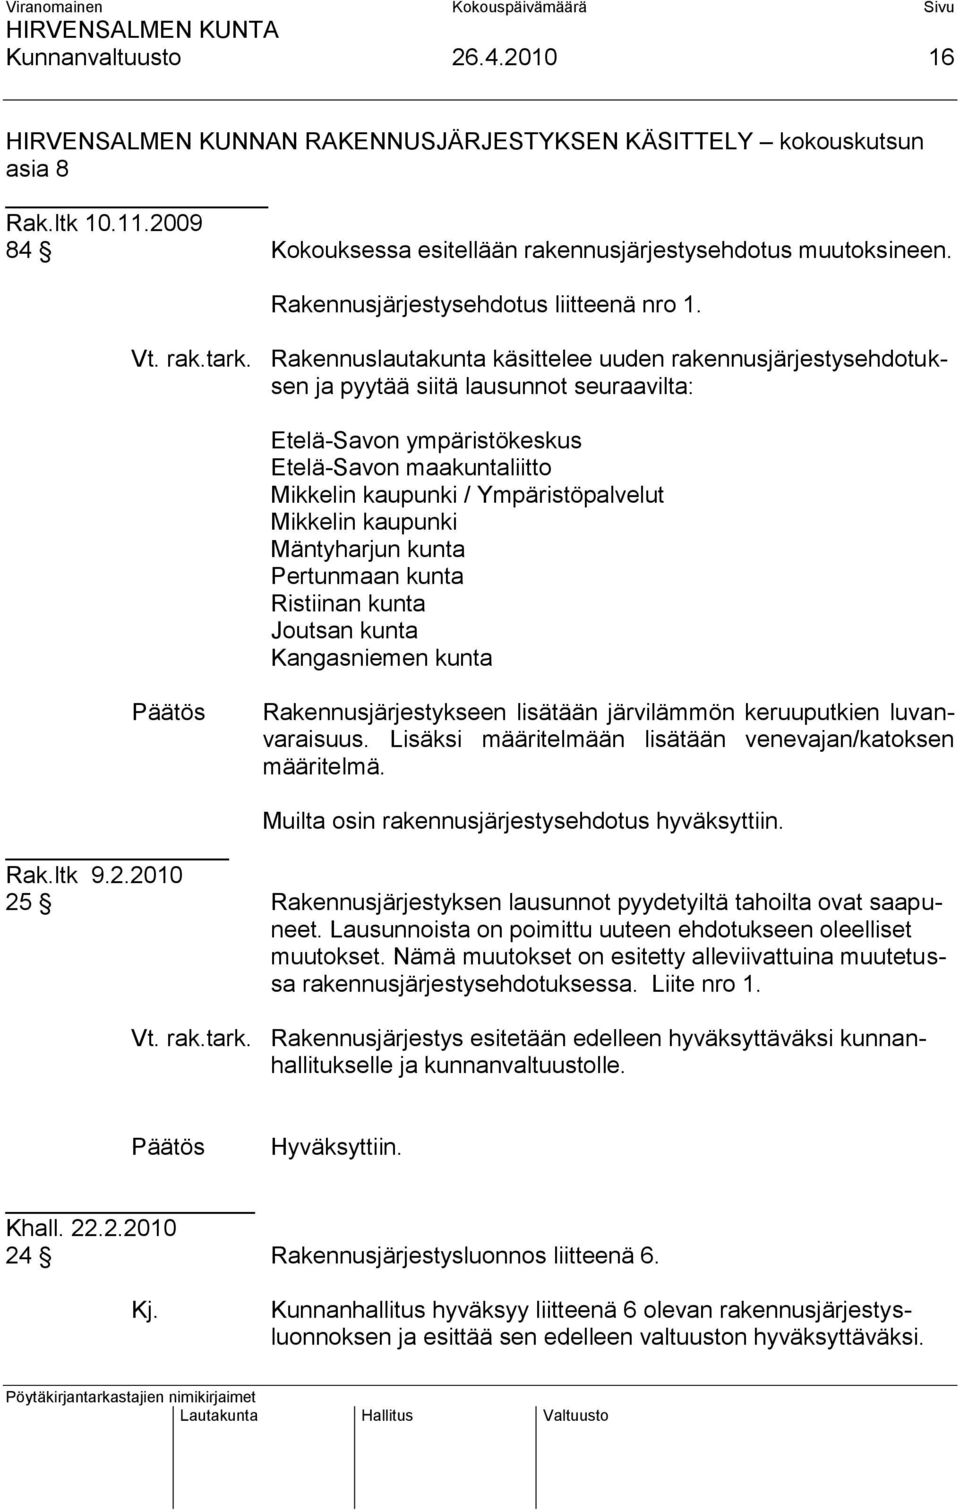 Rakennuslautakunta käsittelee uuden rakennusjärjestysehdotuksen ja pyytää siitä lausunnot seuraavilta: Etelä-Savon ympäristökeskus Etelä-Savon maakuntaliitto Mikkelin kaupunki / Ympäristöpalvelut